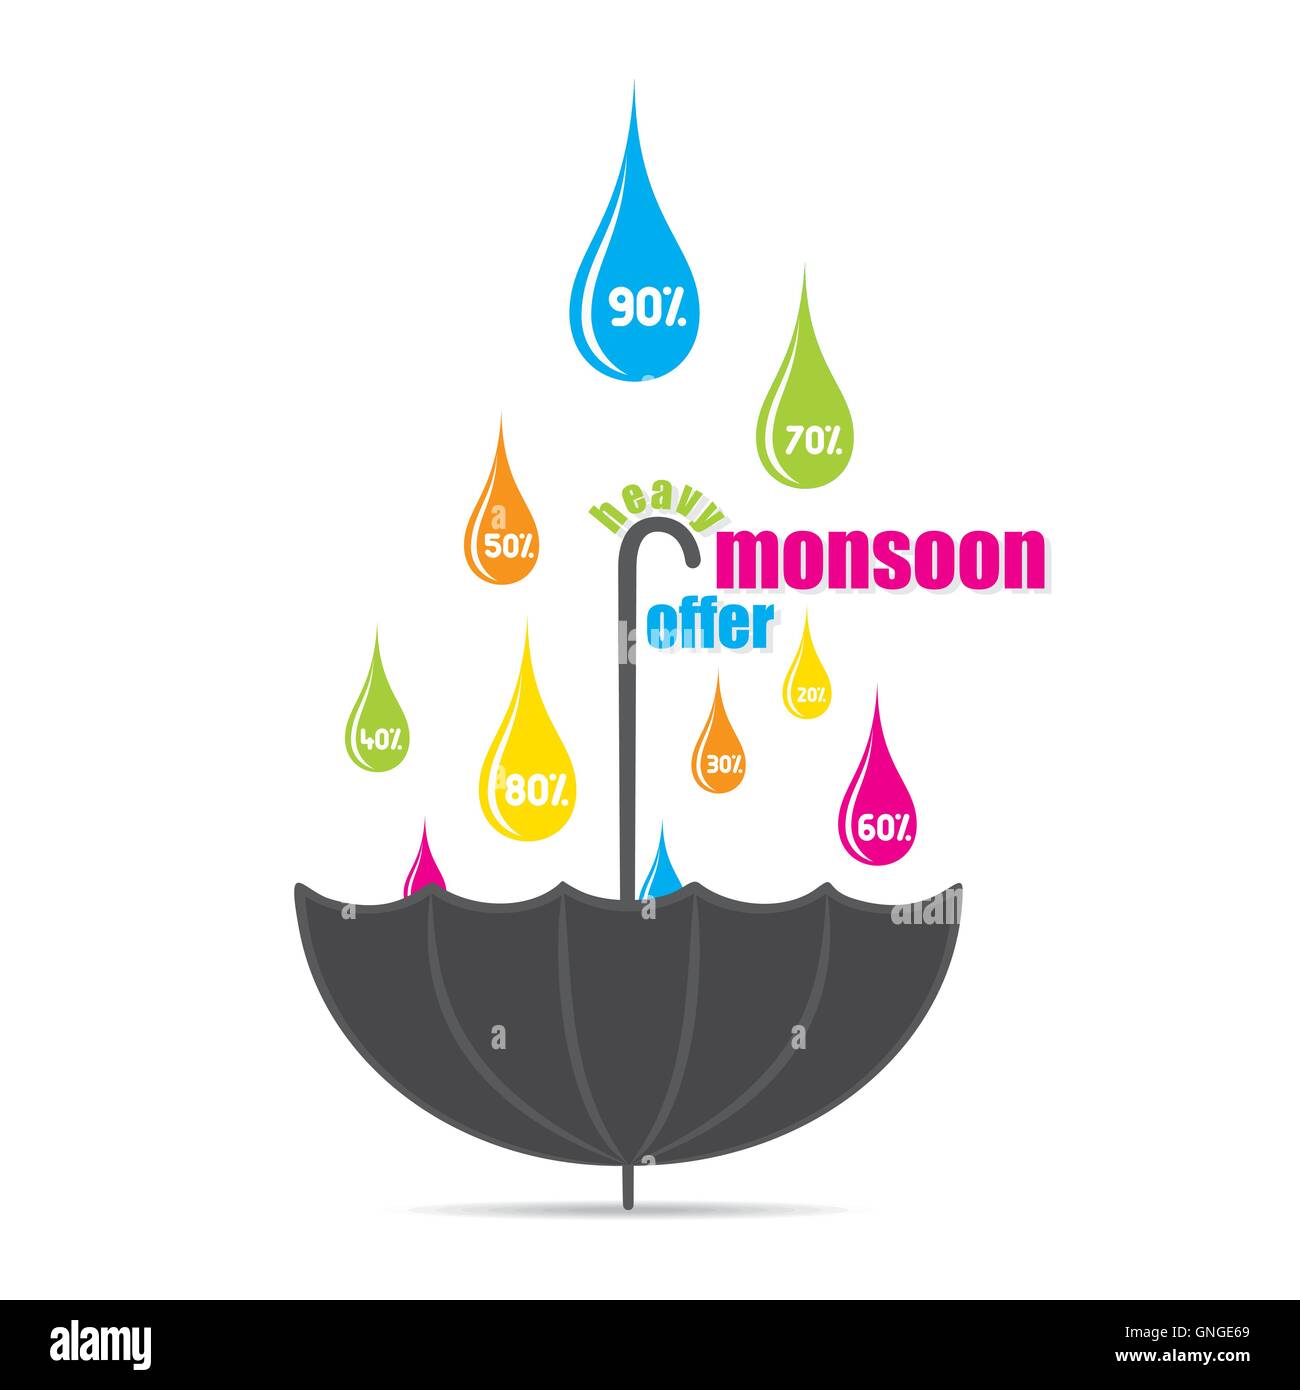 Diseño de banner publicitario oferta de monzón Ilustración del Vector